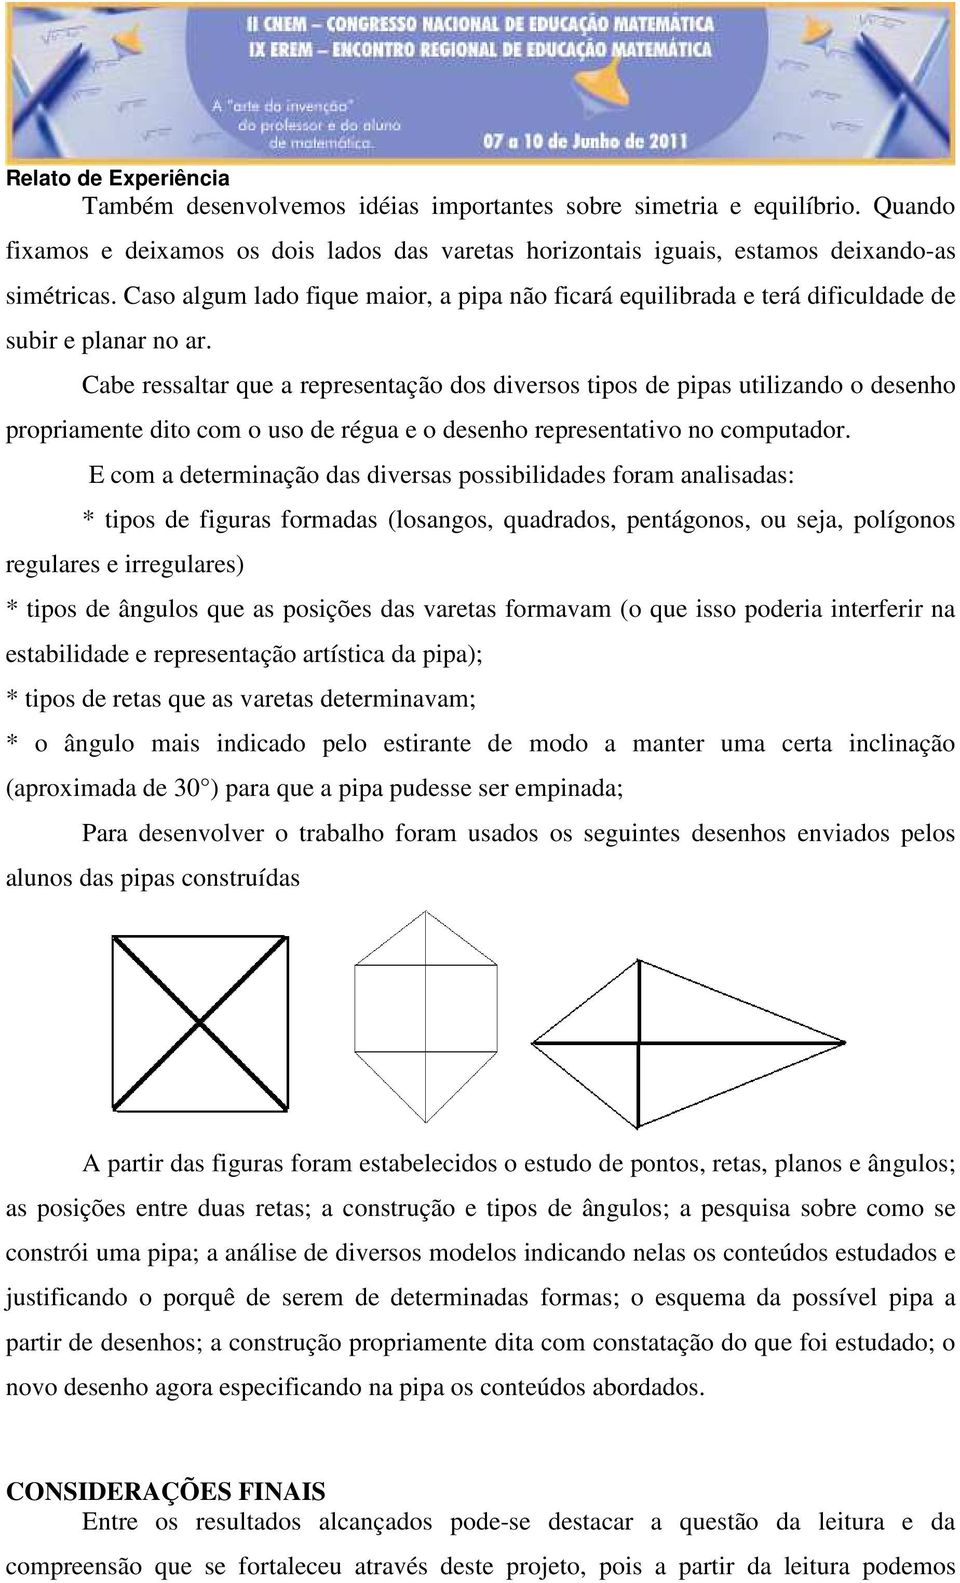 Cabe ressaltar que a representação dos diversos tipos de pipas utilizando o desenho propriamente dito com o uso de régua e o desenho representativo no computador.